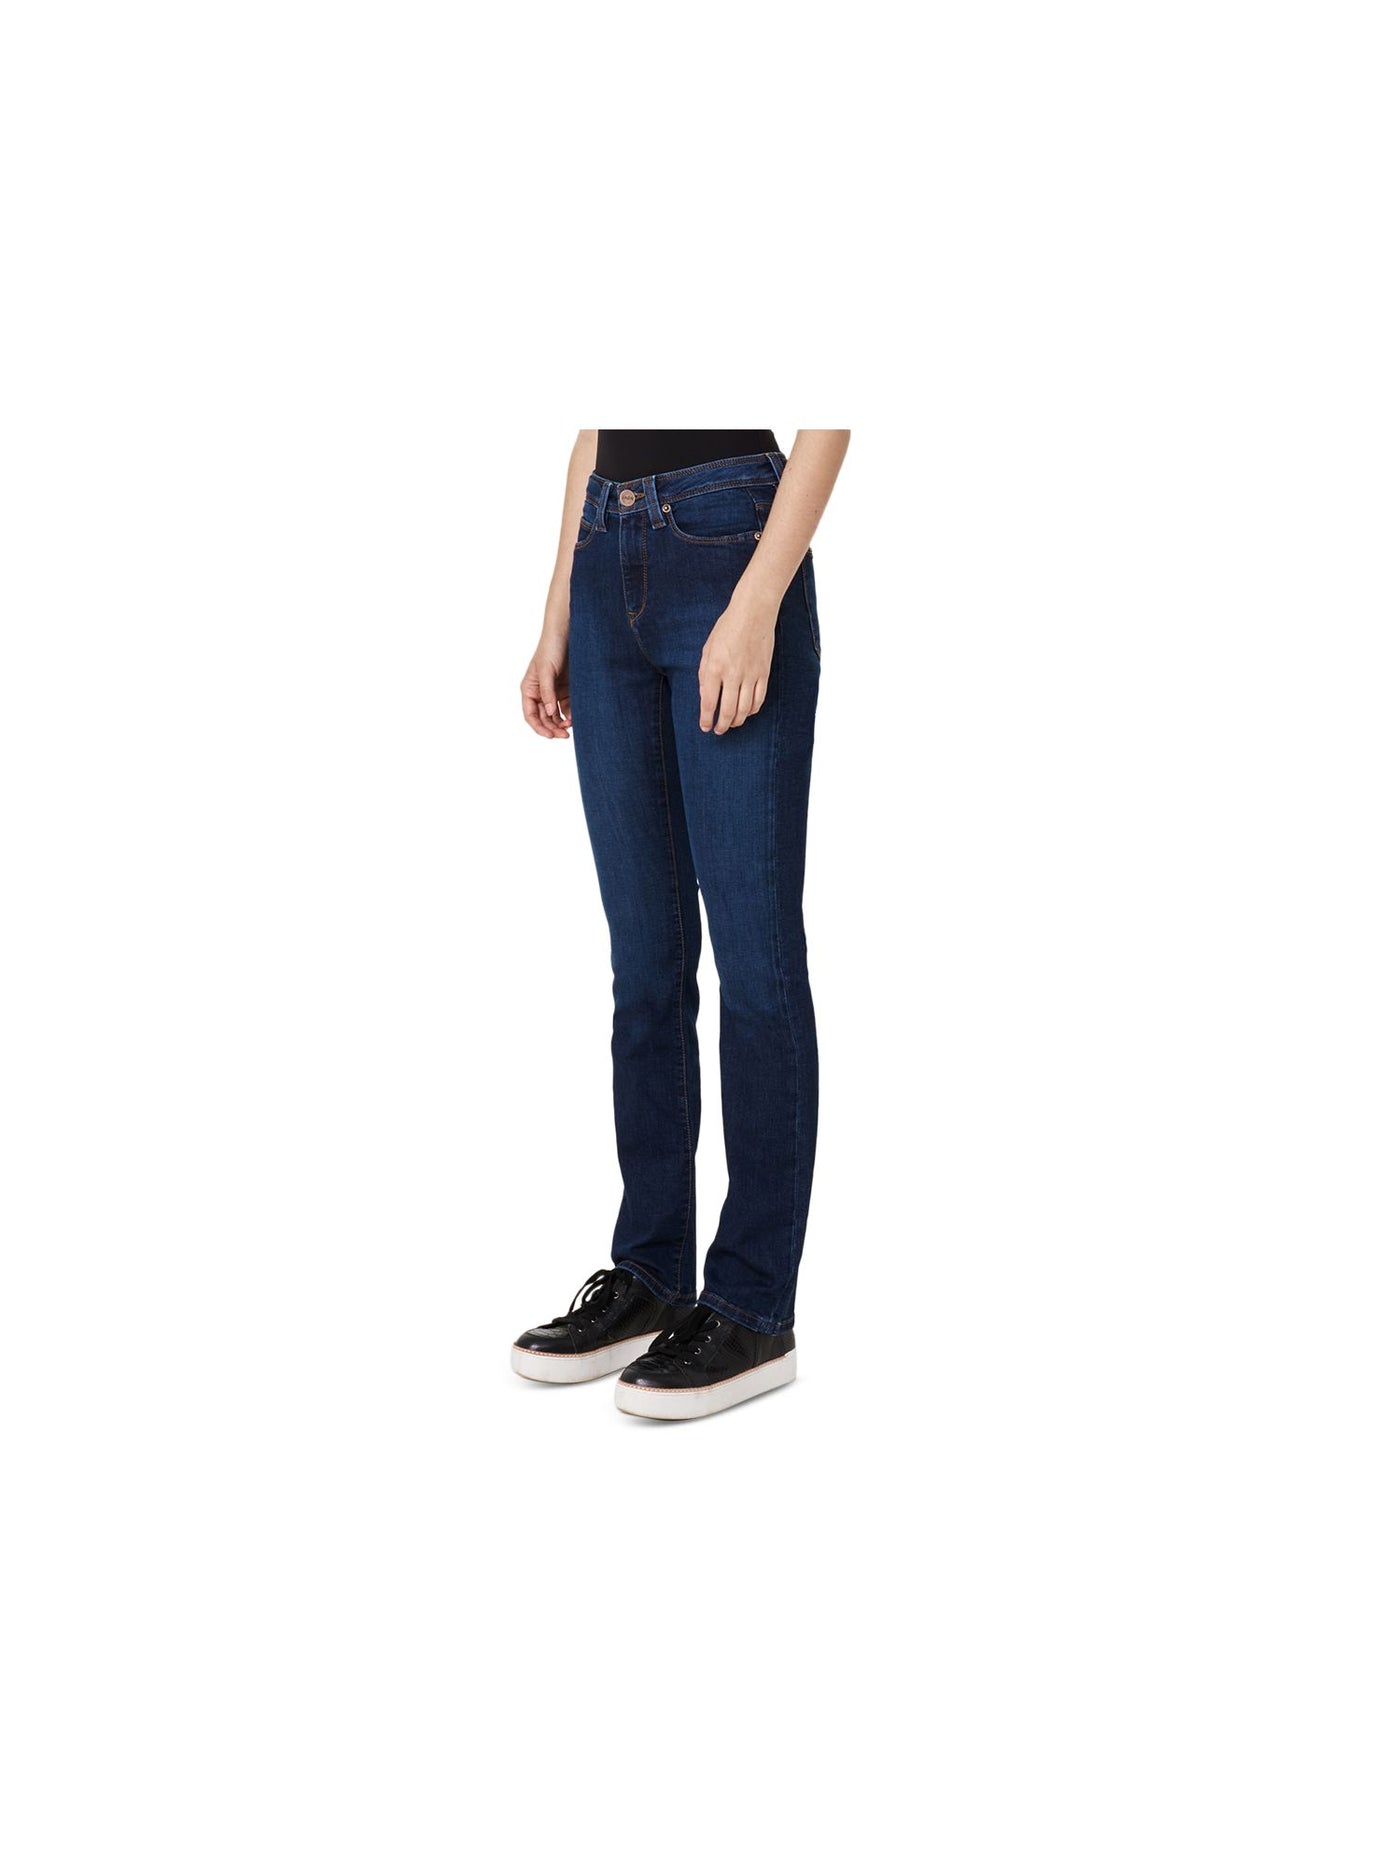 JAEN Womens Blue Zippered Pocketed High Waist Jeans 33